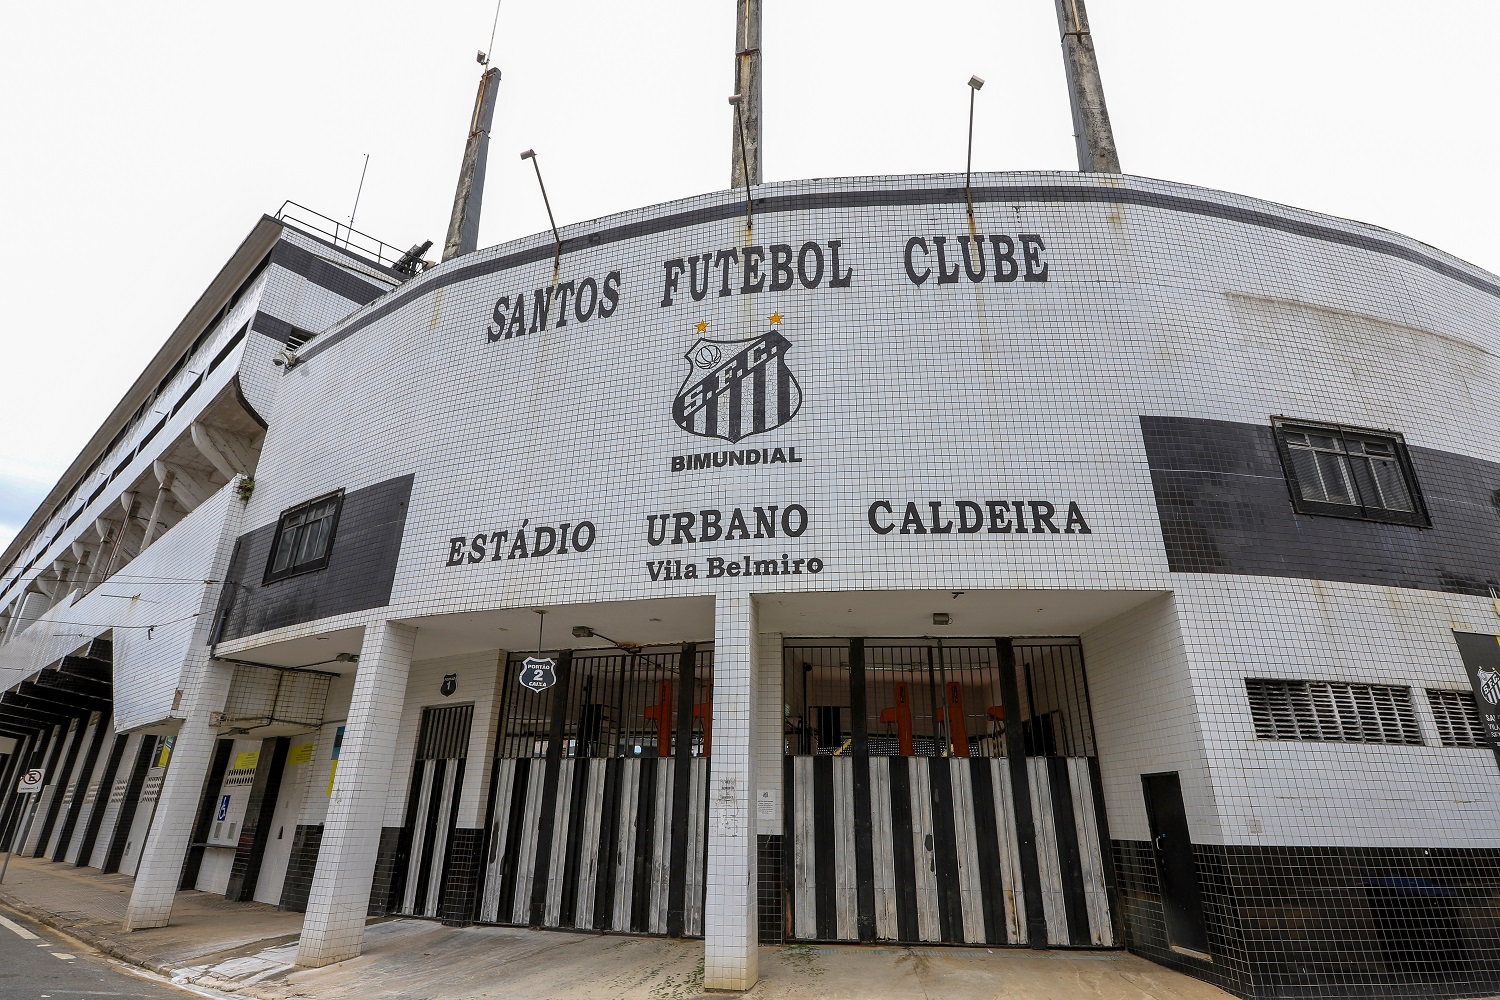 The exterior of the Urbano Caldeira stadium, the home ground of Santos FC.